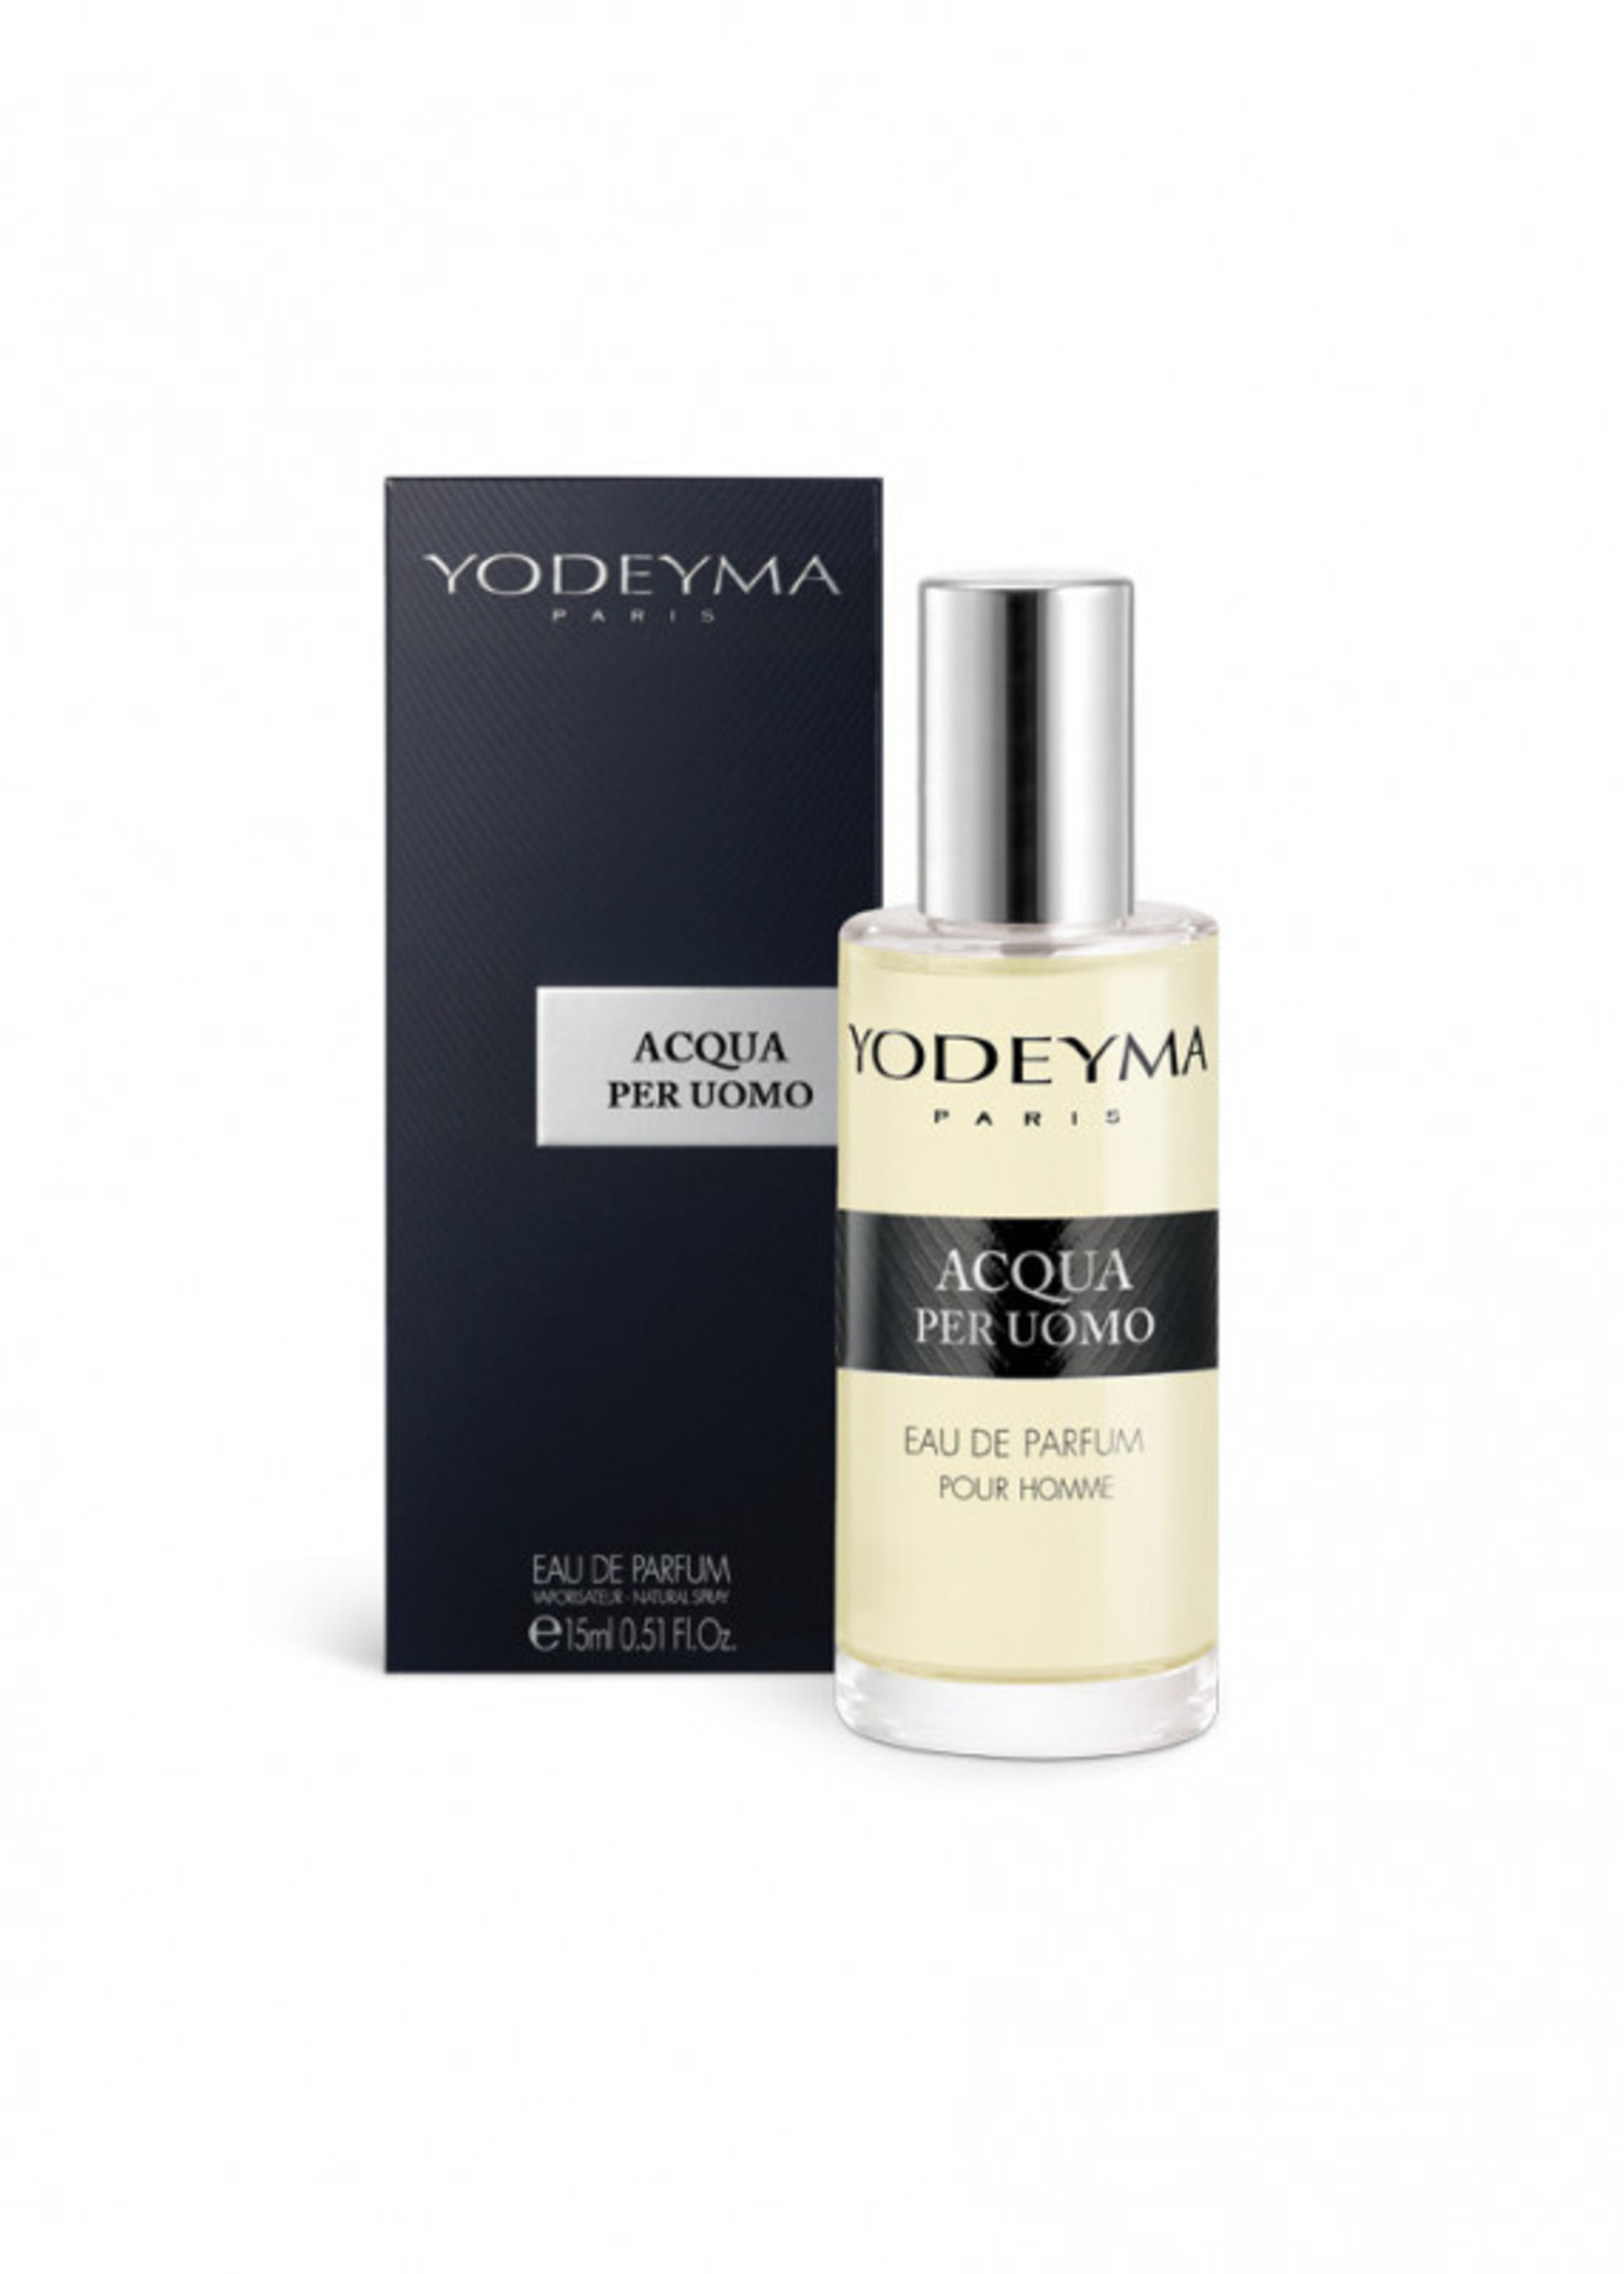 Yodeyma Parfums (Tester) ACQUA PER UOMO Eau de Parfum 15ml.